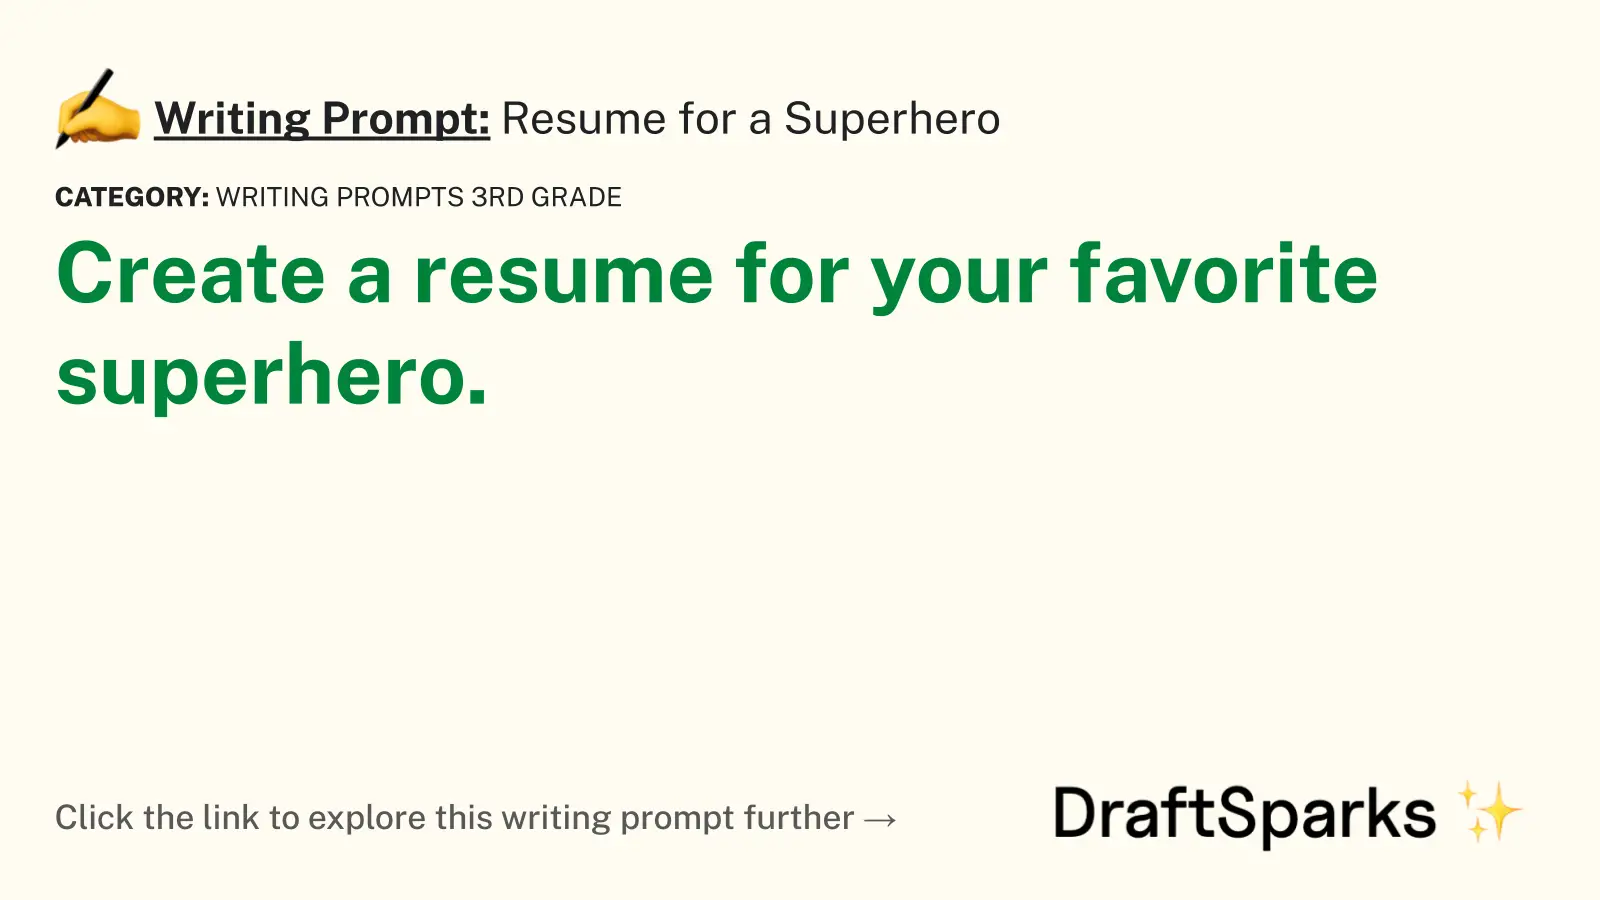 Resume for a Superhero